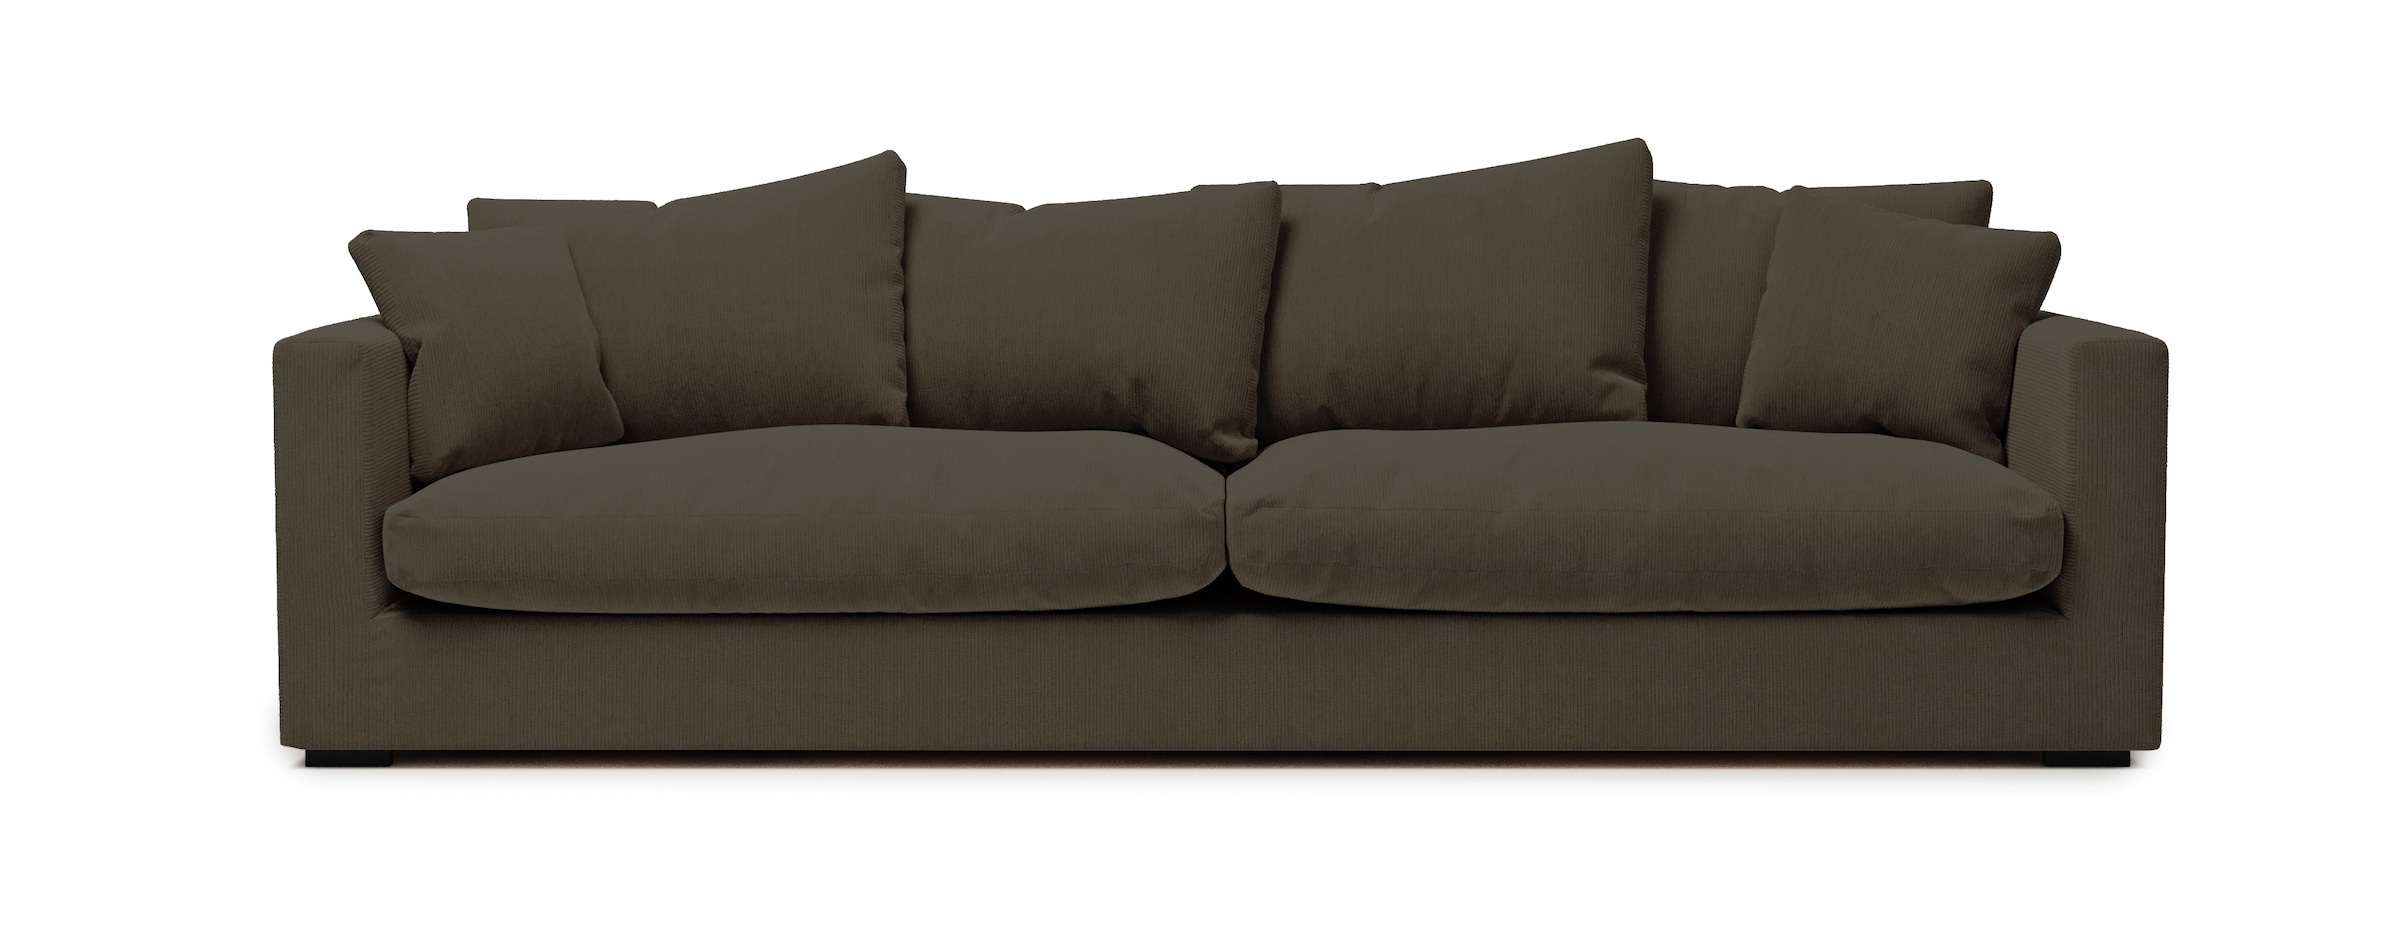 Sofa Big Ultrabequemes | bei Big kaufen Sofas online